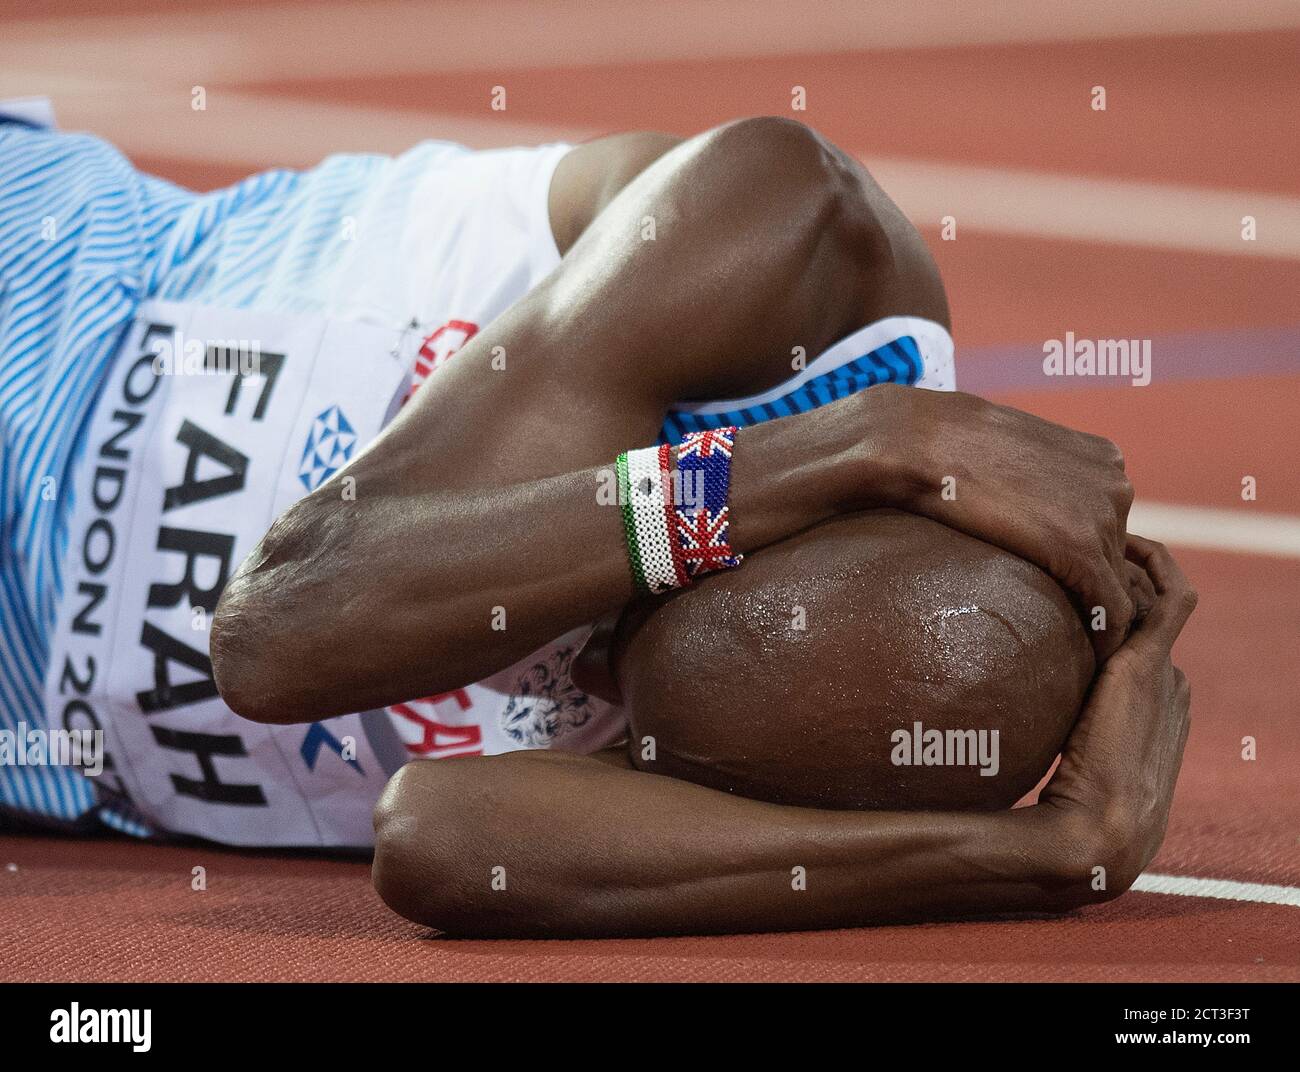 Mo Farah après la 2e finale de la Mens 5000m. Championnats du monde d'athlétisme - Londres 2017 PHOTO CREDIT : © MARK PAIN / PHOTO DE STOCK D'ALAMY Banque D'Images